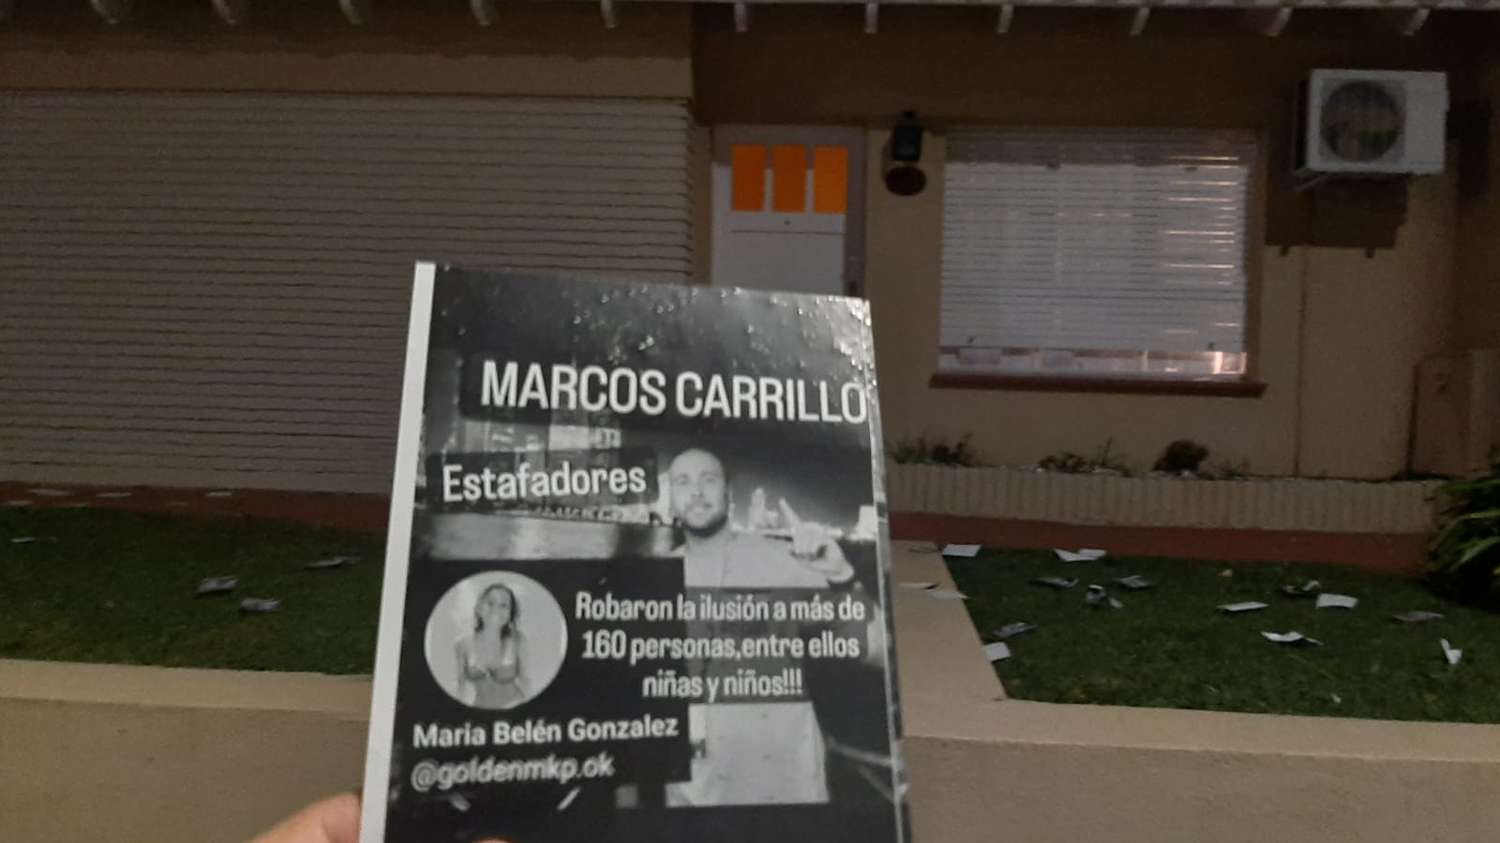 Los vecinos protestaron en la puerta de la casa de Marcos Carrillo por la venta de entradas truchas